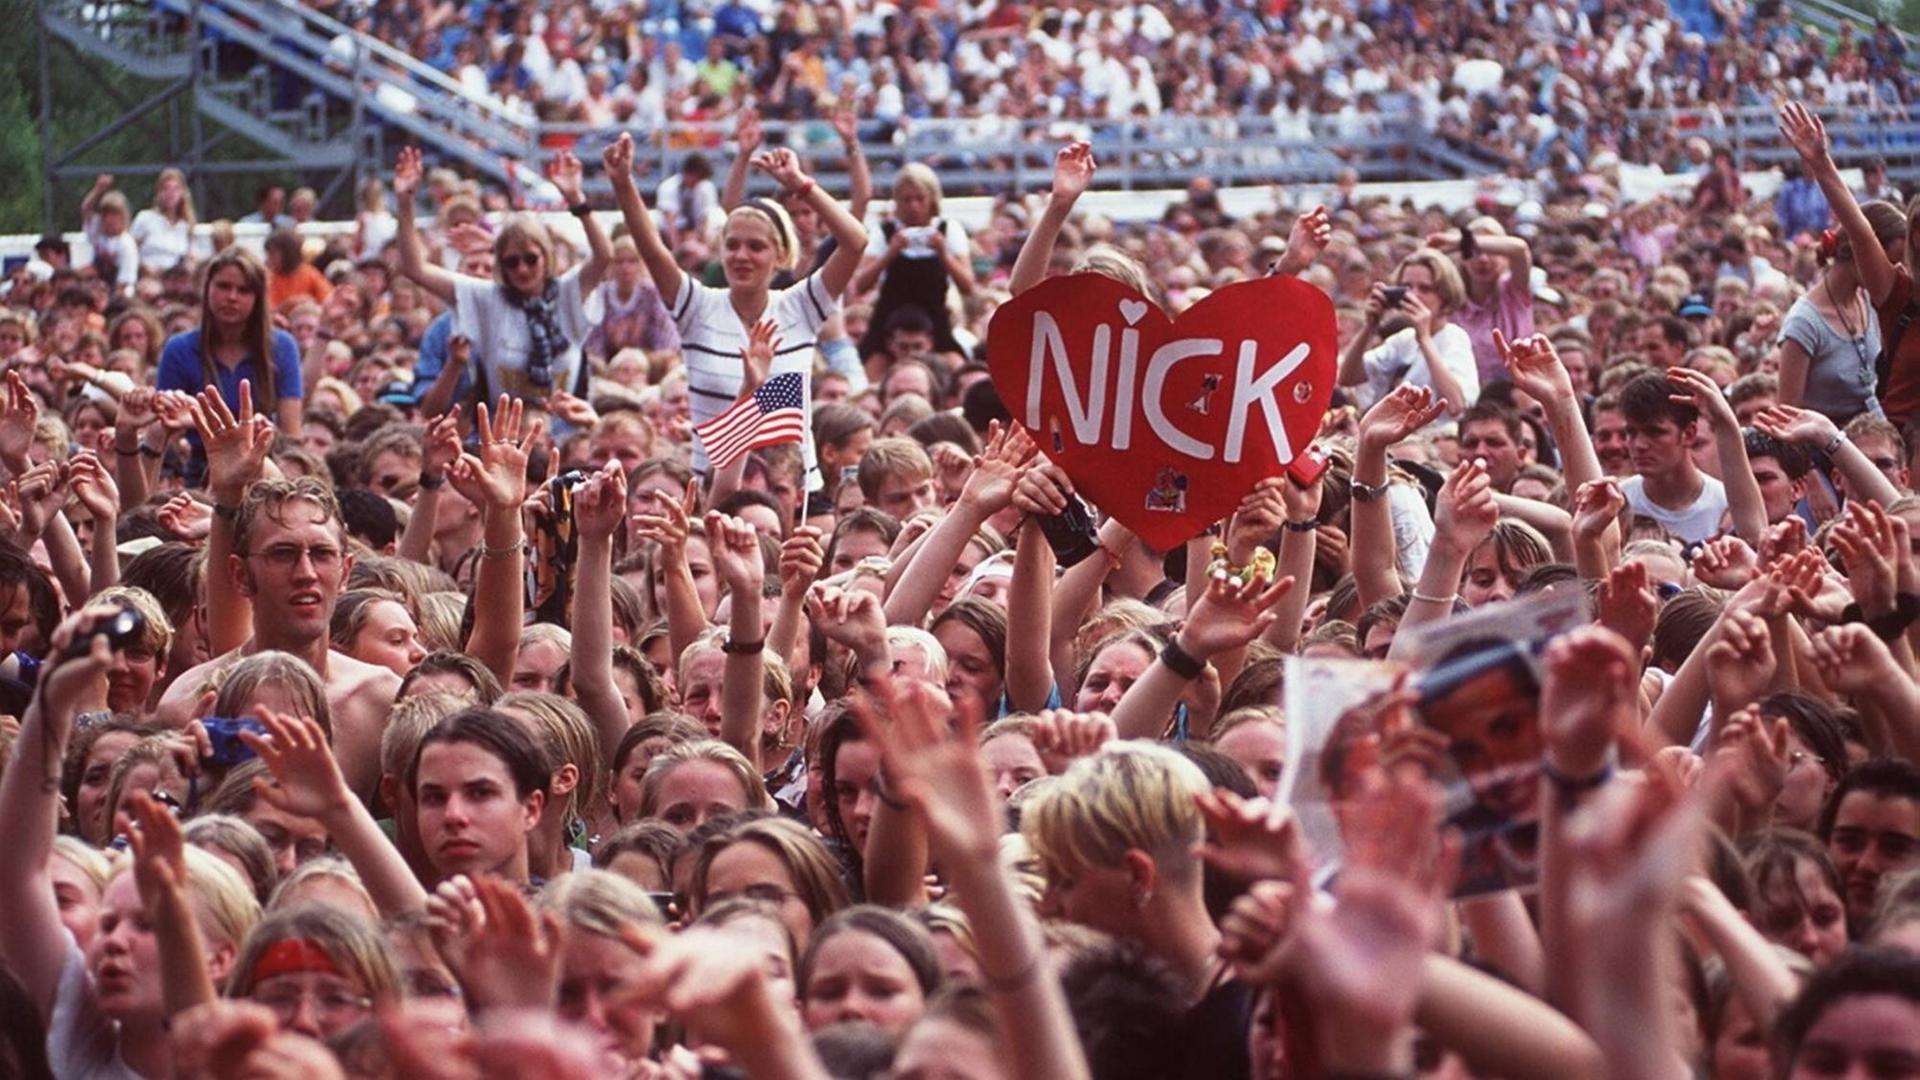 Jugendliche Fans bei einem Popkonzert der Backstreet Boys am 01.09.1996. Ein Plakat in Herzform wird hochgehalten, auf dem "Nick" steht, der Name eines der Bandmitglieder